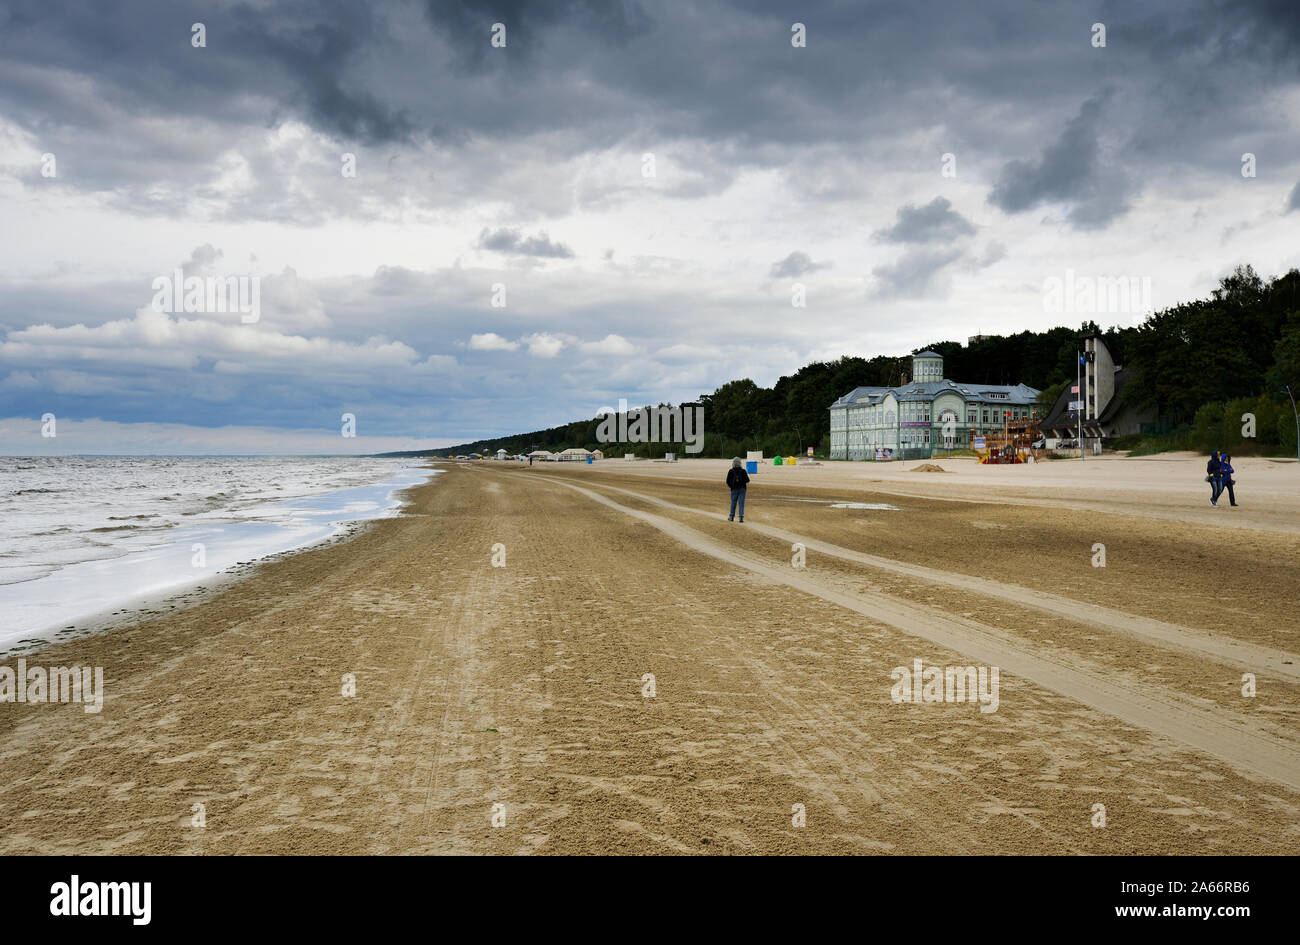 La playa del Mar Báltico de Jurmala. Riga, Letonia Fotografía de stock -  Alamy